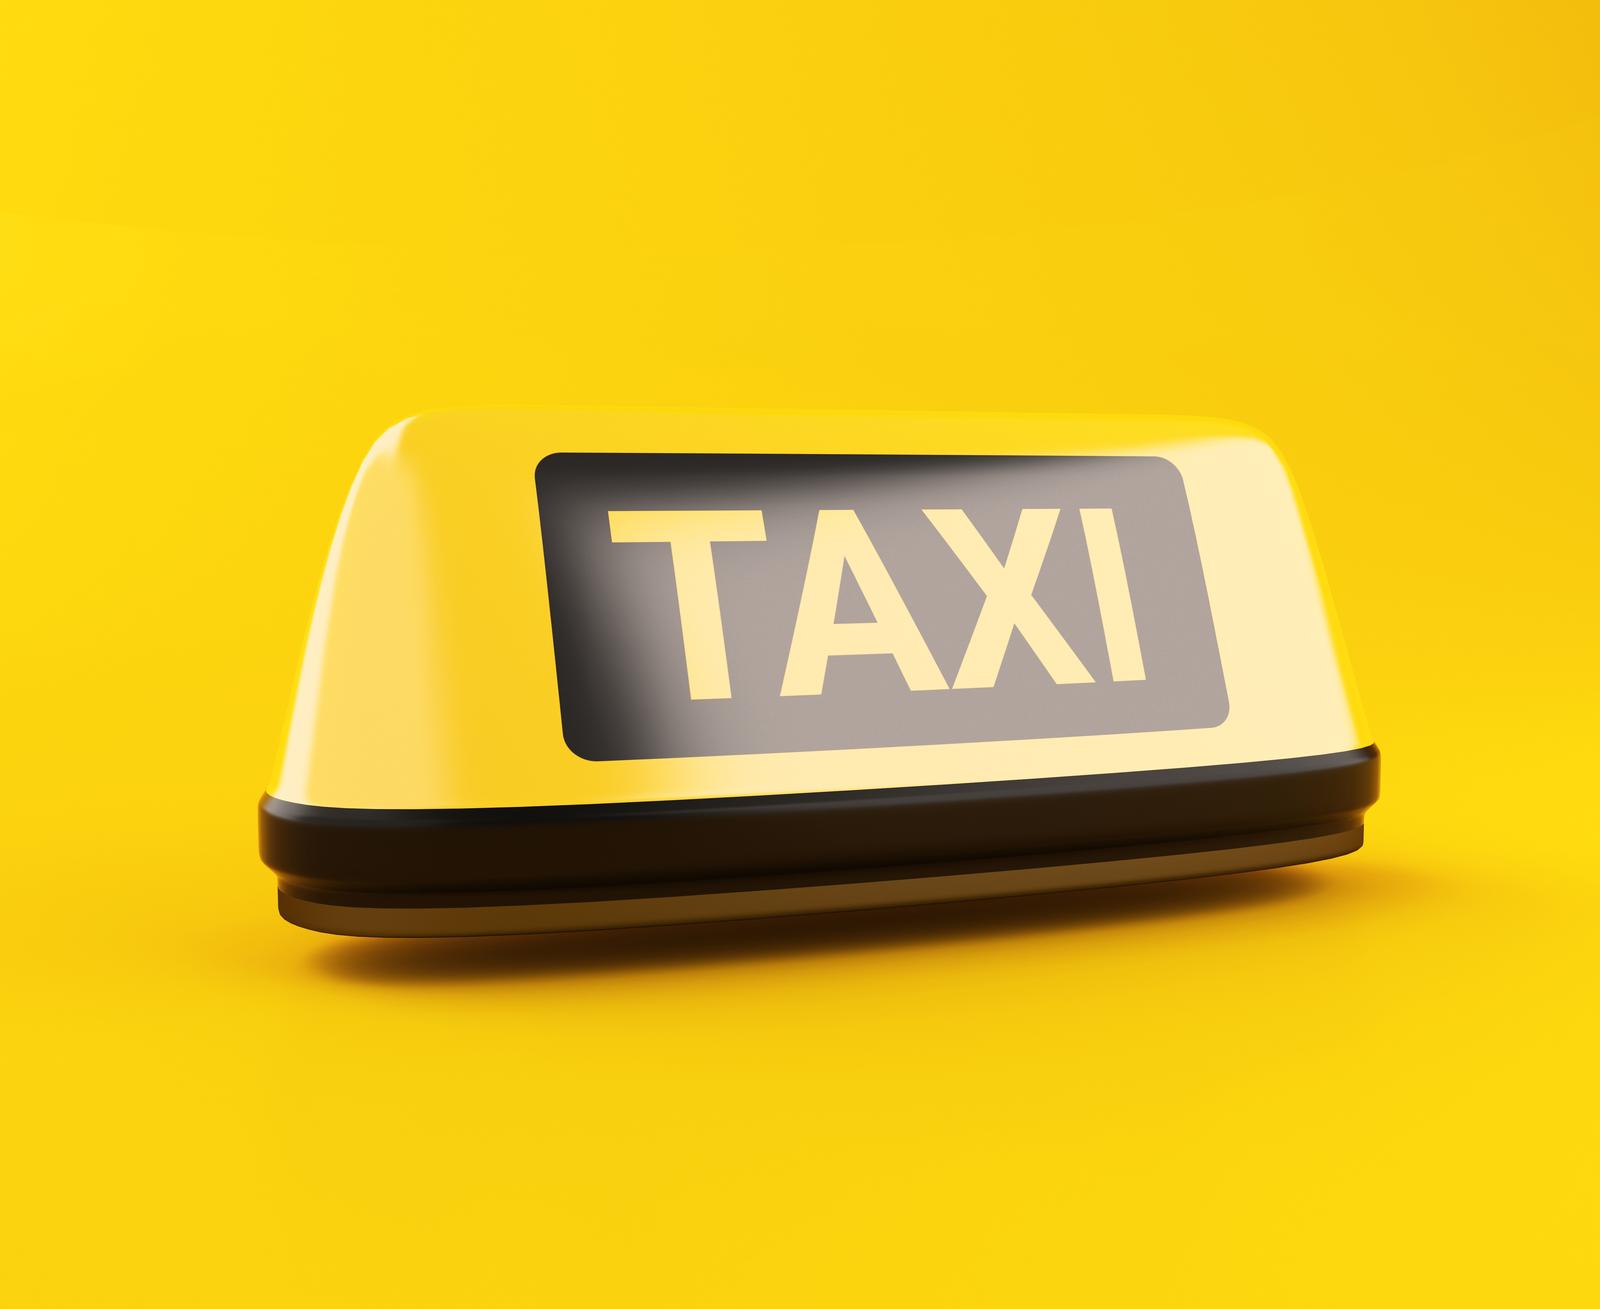 Taxi operation in Estonia